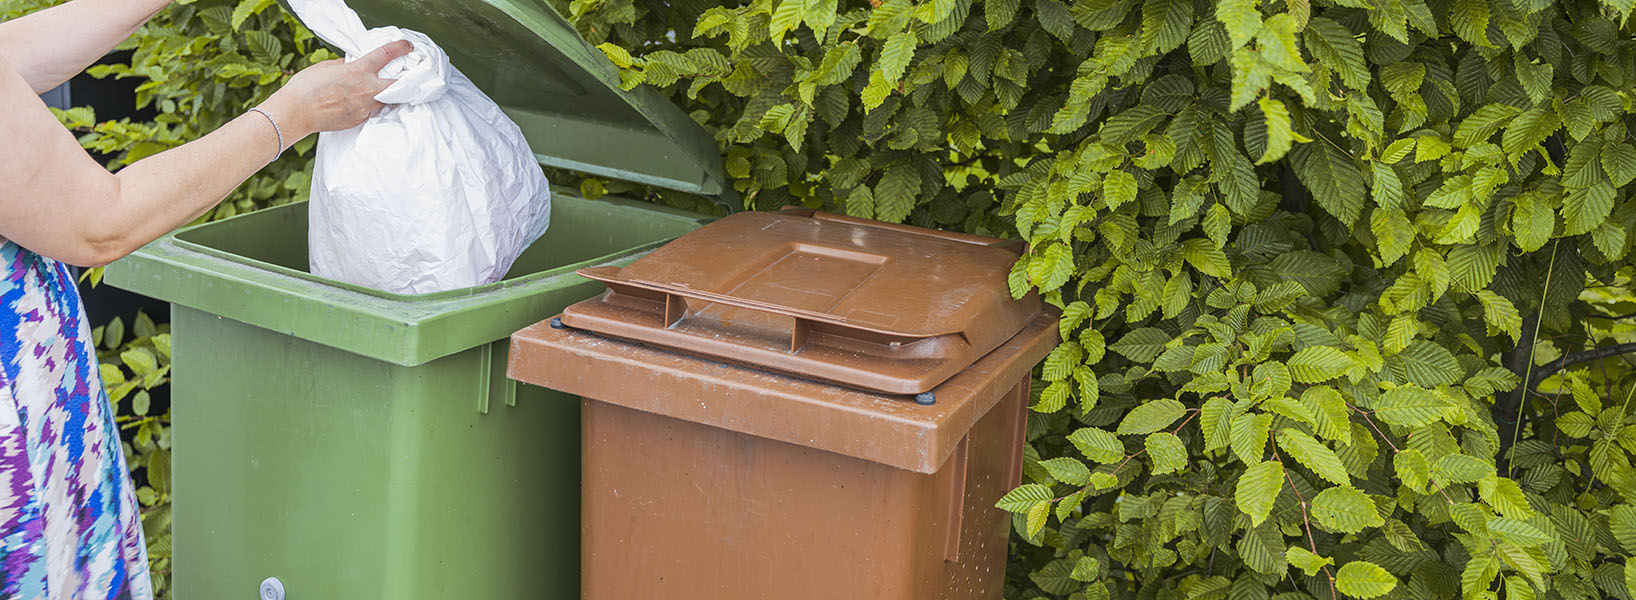 En kvinna slänger sopor i en grön soptunna